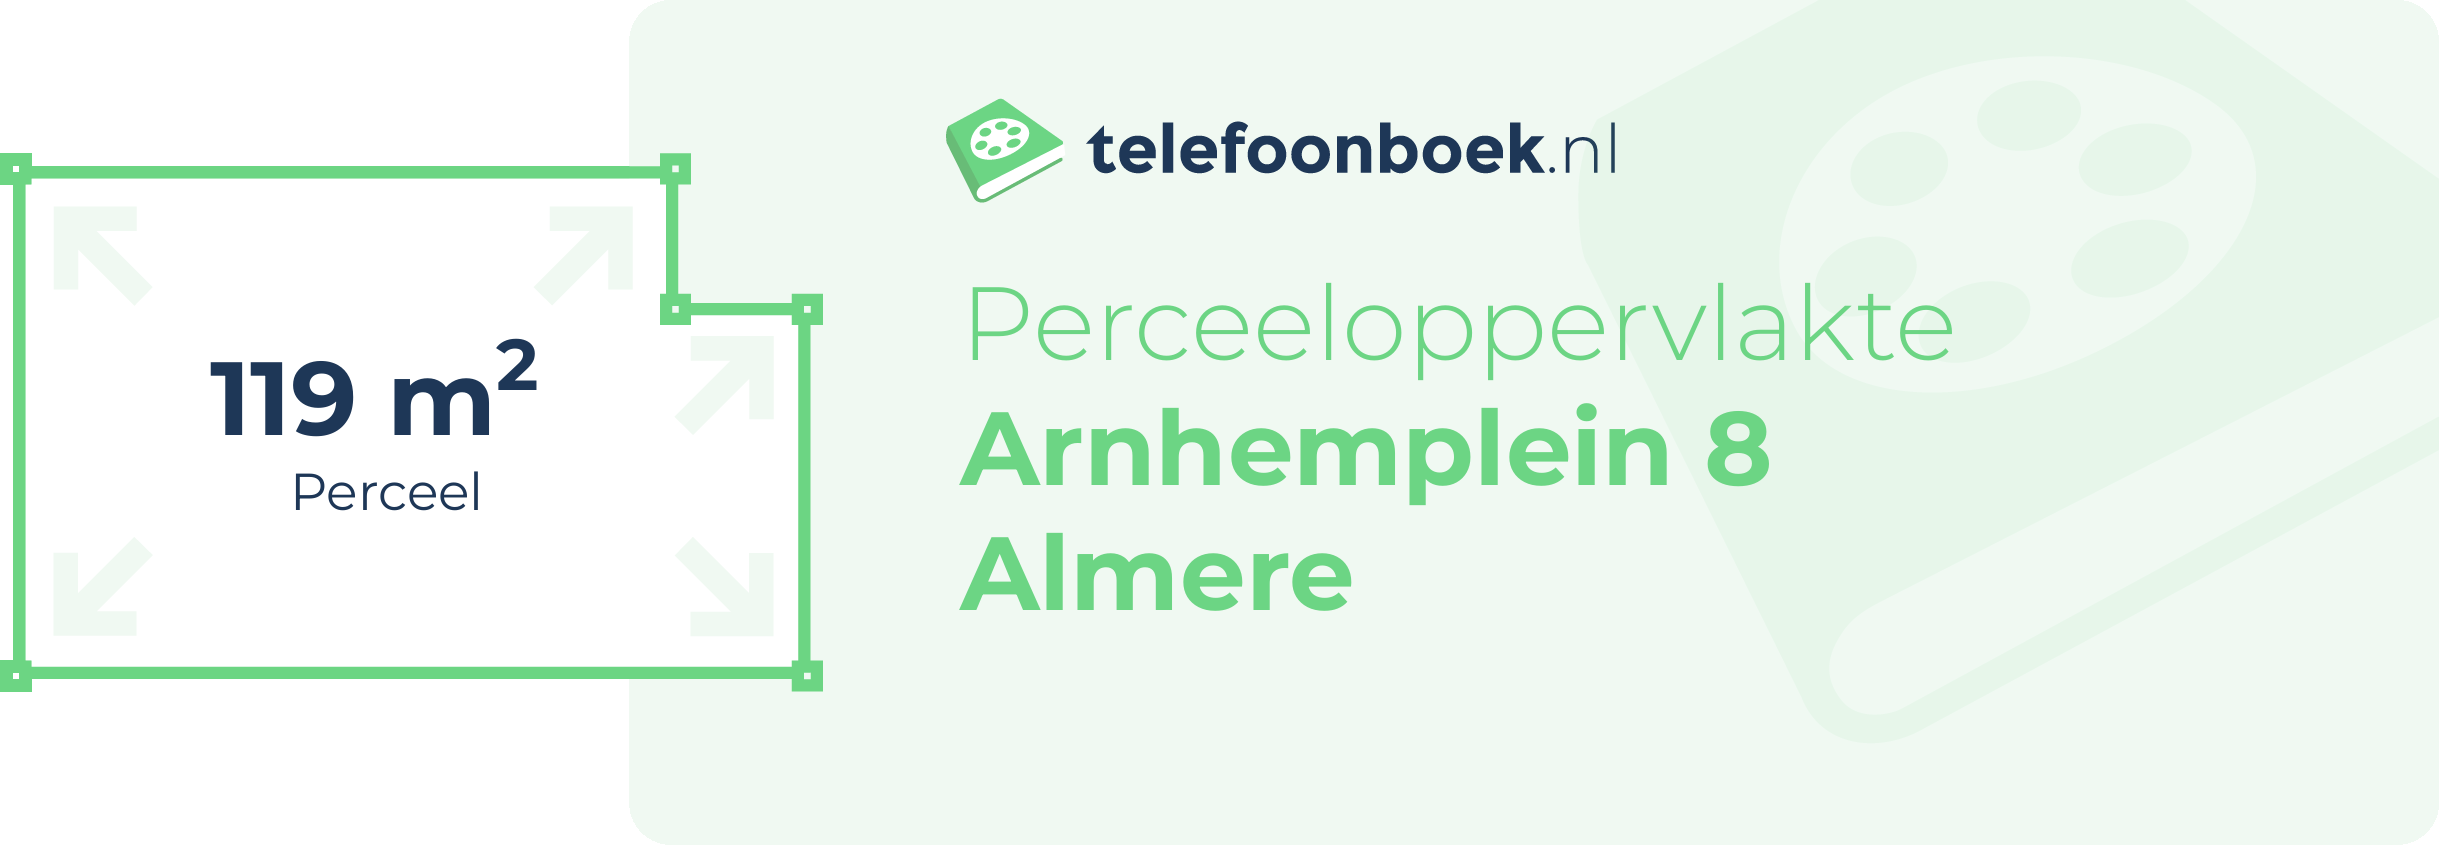 Perceeloppervlakte Arnhemplein 8 Almere